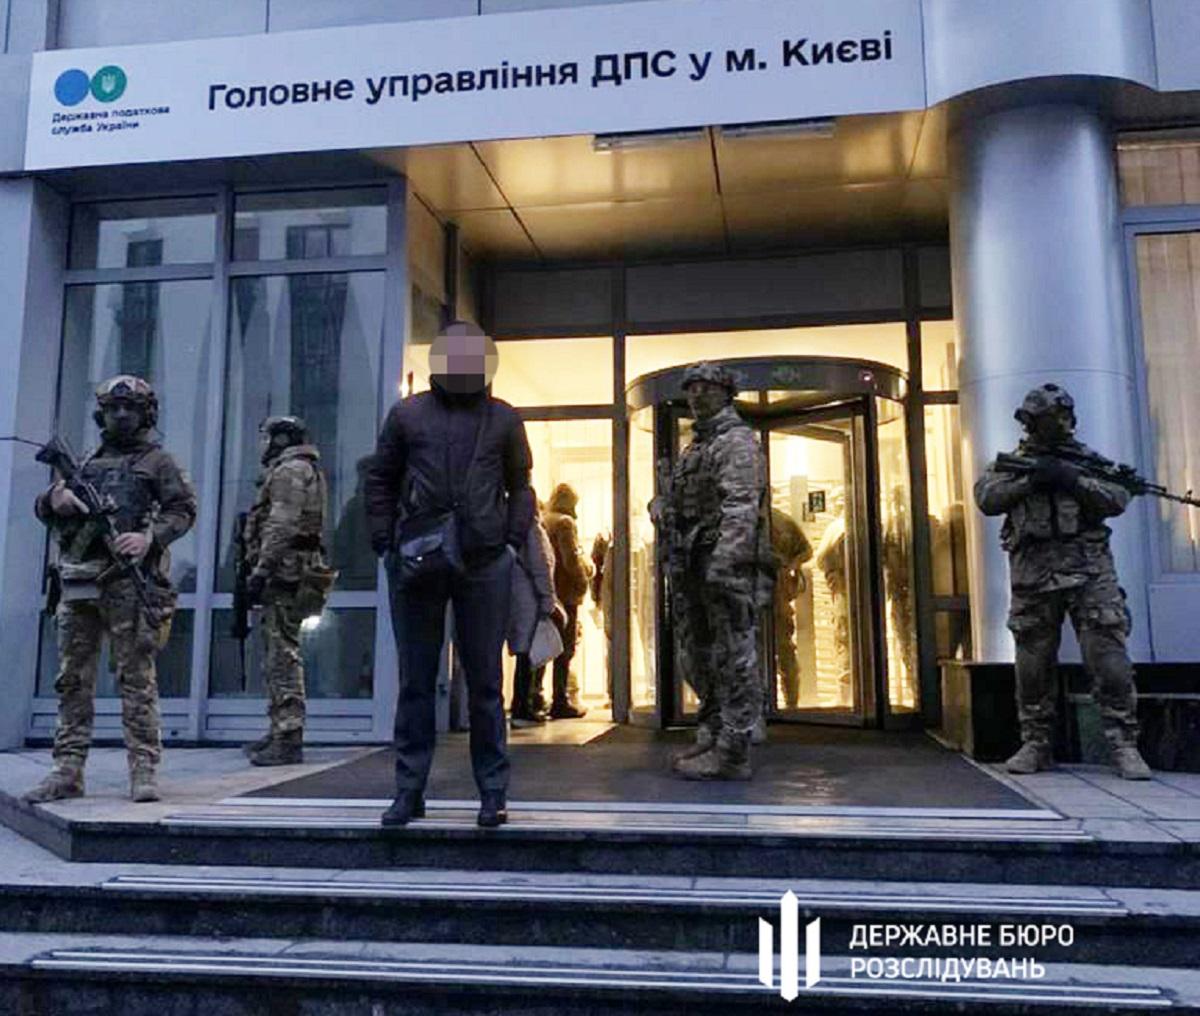 Глава налоговой службы Киева написала заявление на увольнение после обысков / фото ГБР